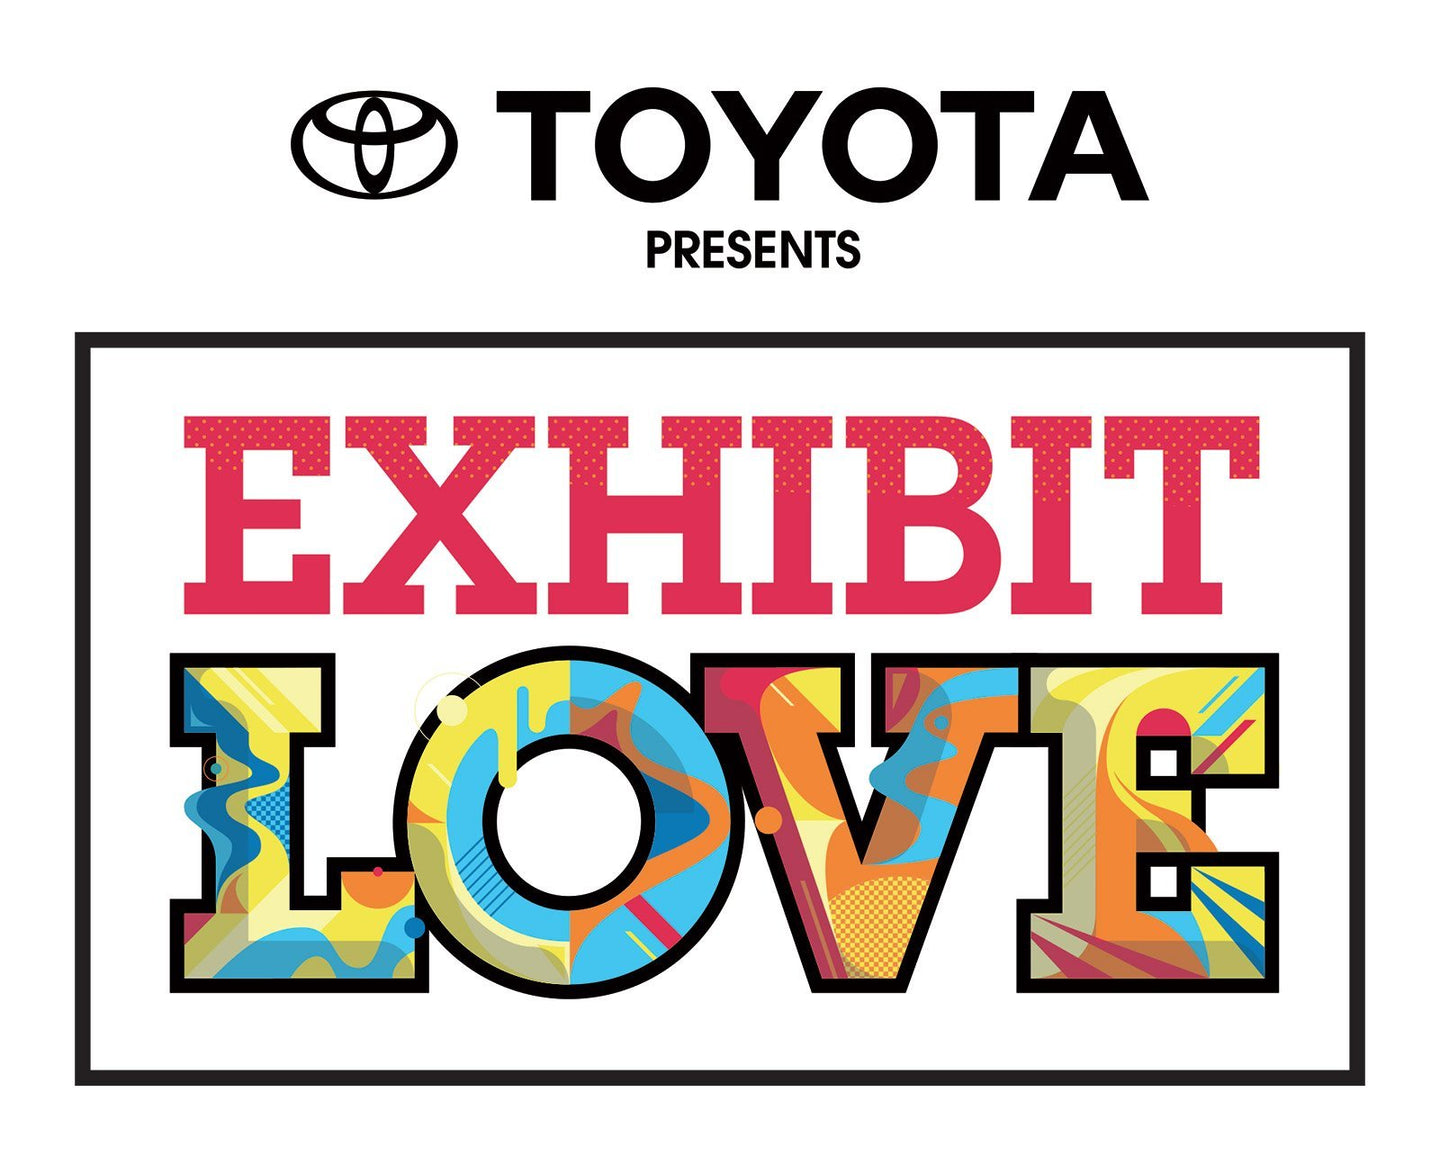 Toyota Presents: Exhibit Love